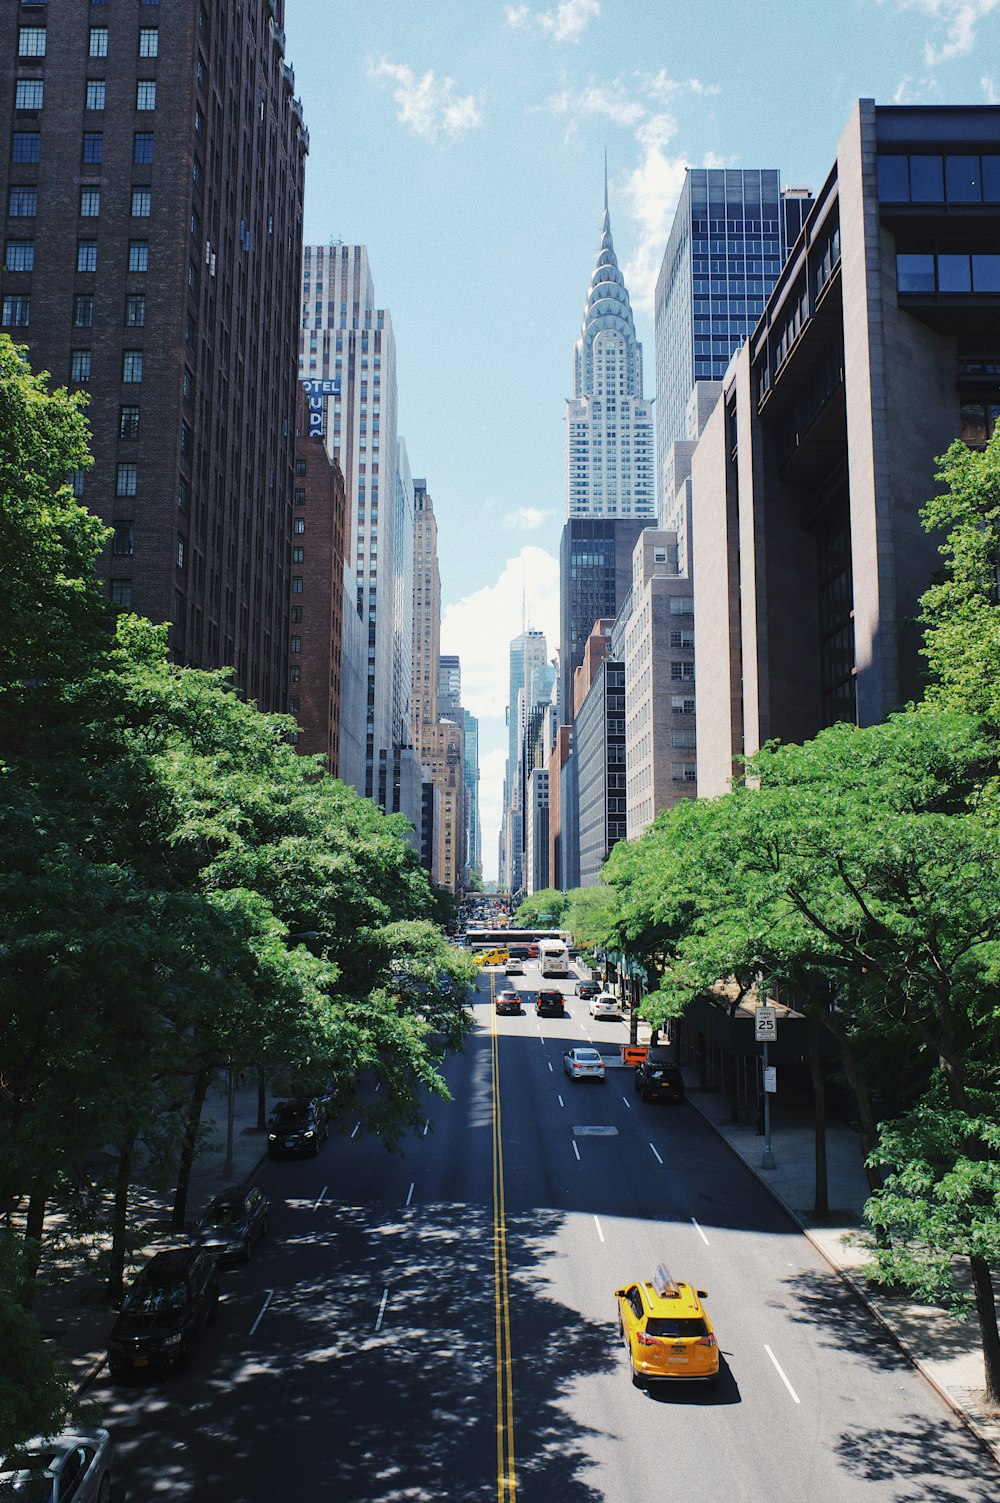 Hình nền thành phố New York mang lại cho bạn cảm giác sống động và thăng hoa những cảm xúc độc đáo. Với những khung cảnh độc đáo và mờ sáng lung linh, bạn sẽ cảm thấy như đang trải nghiệm trải nghiệm khám phá thành phố lớn nhất nước Mỹ với hình nền này.